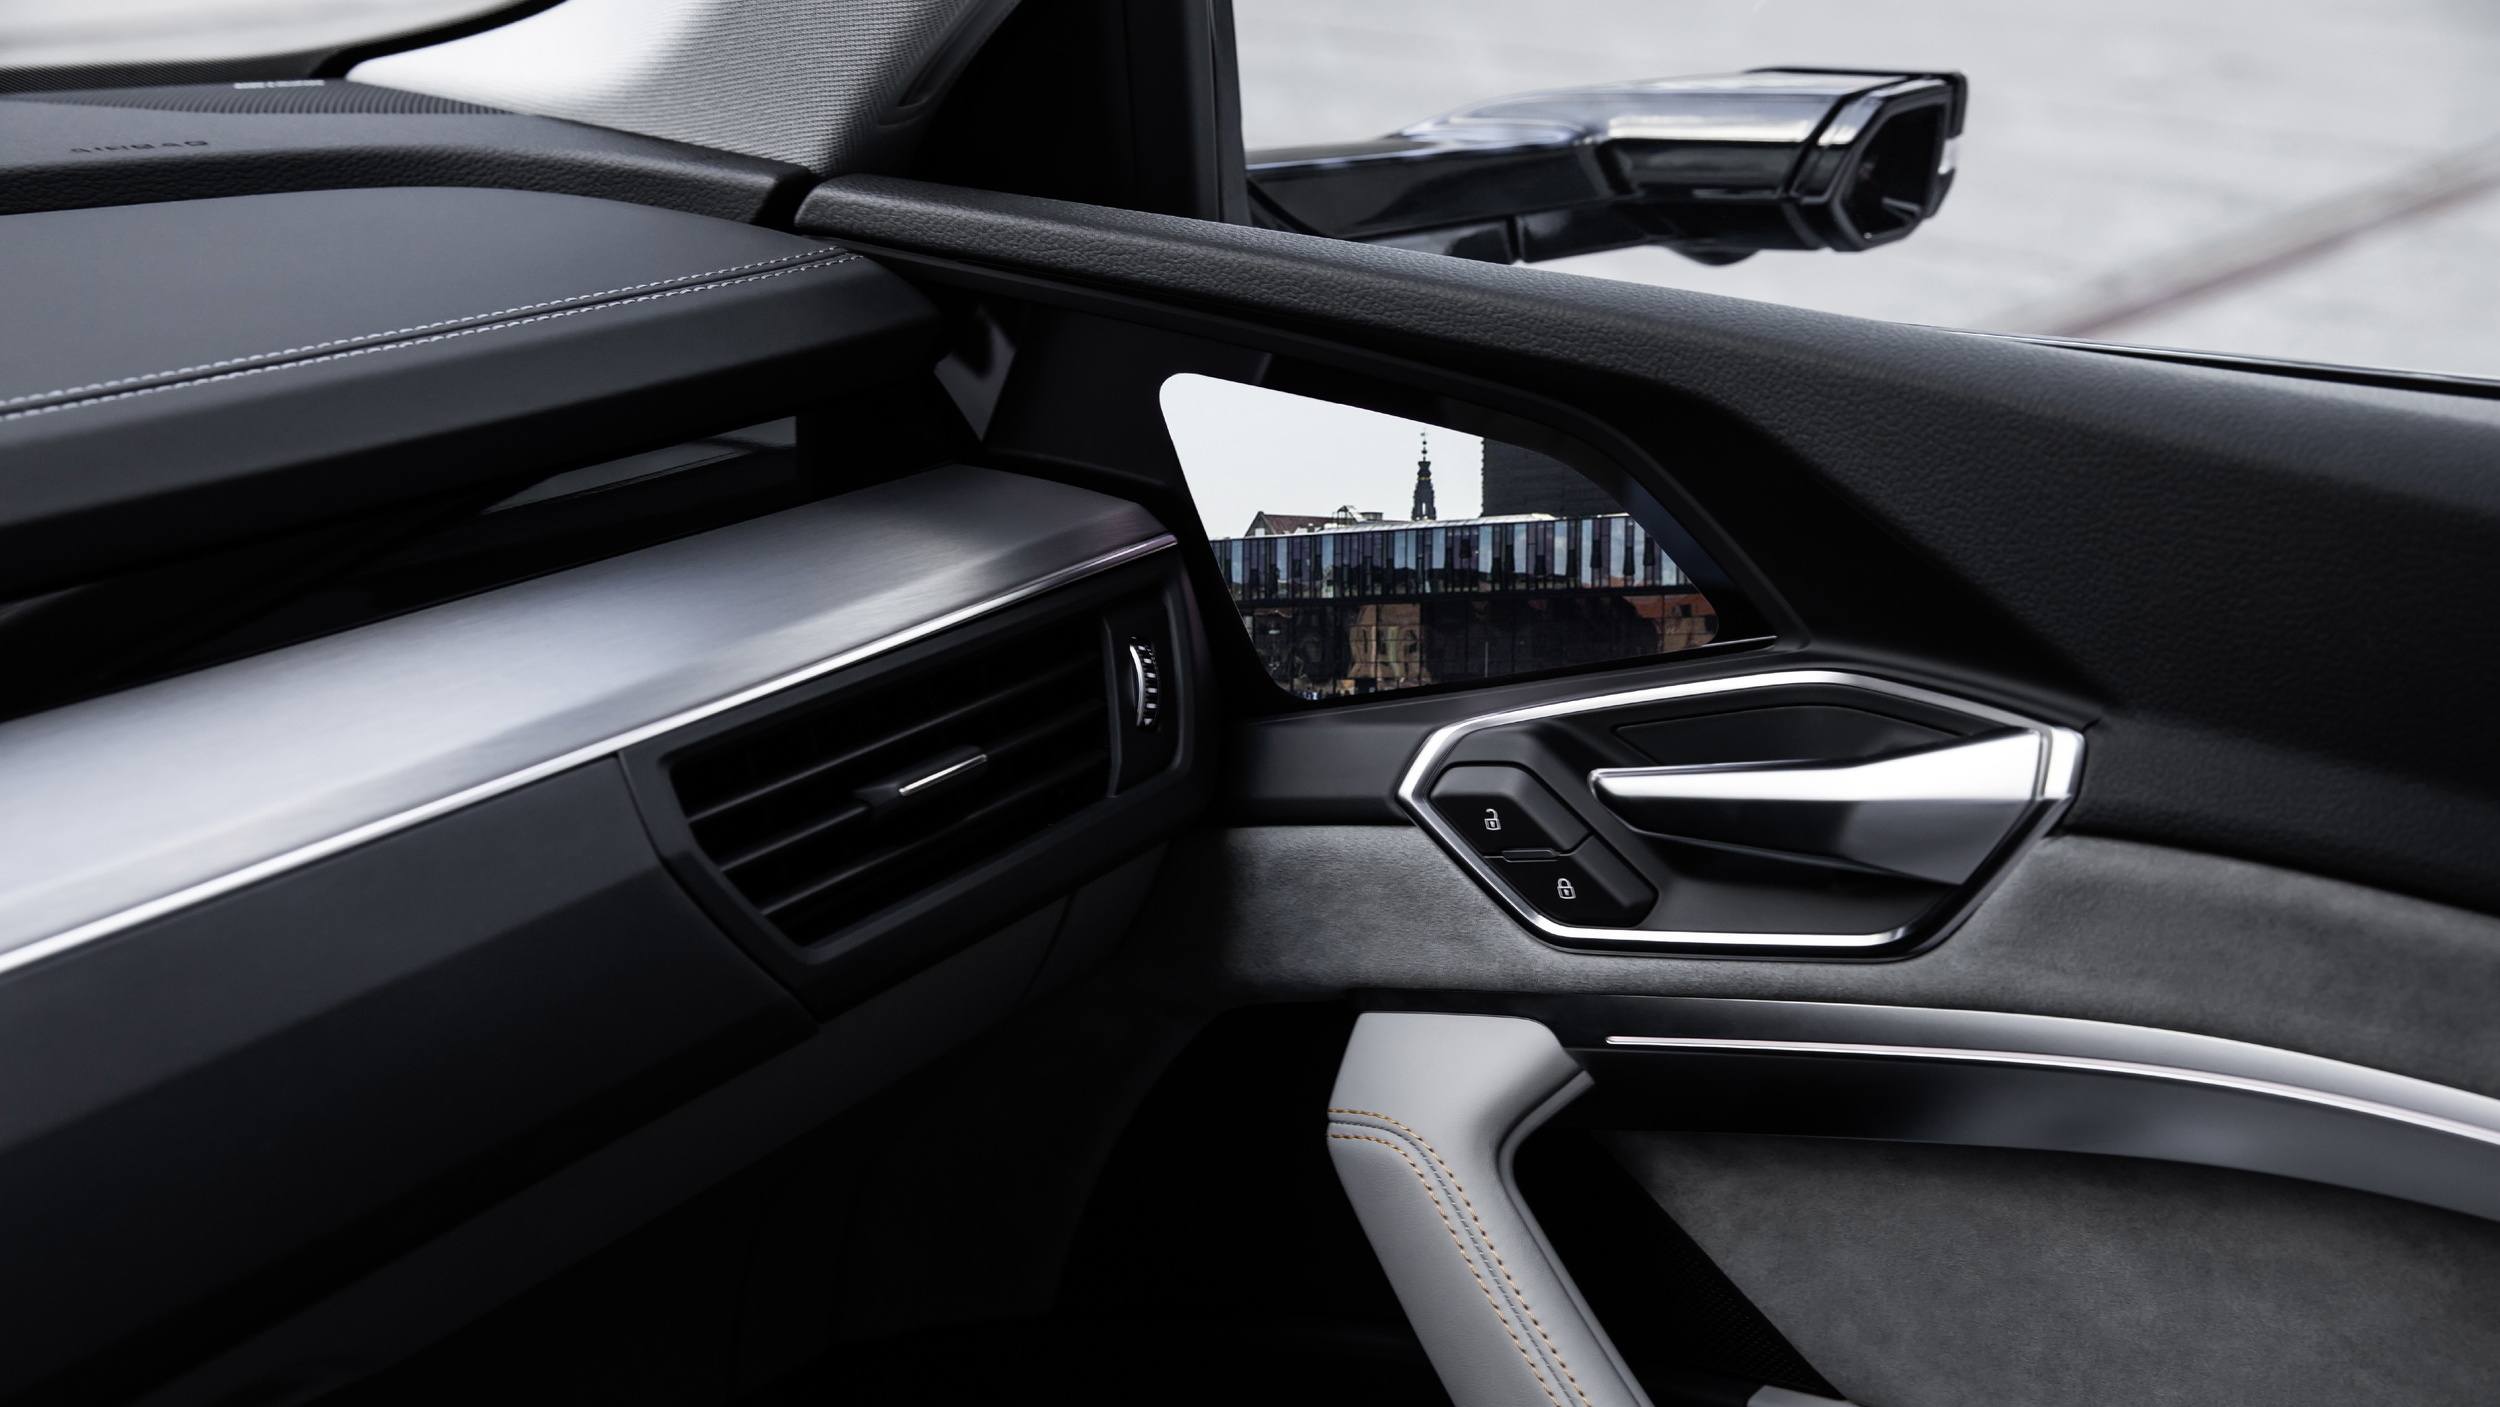 Audi etron interior 09